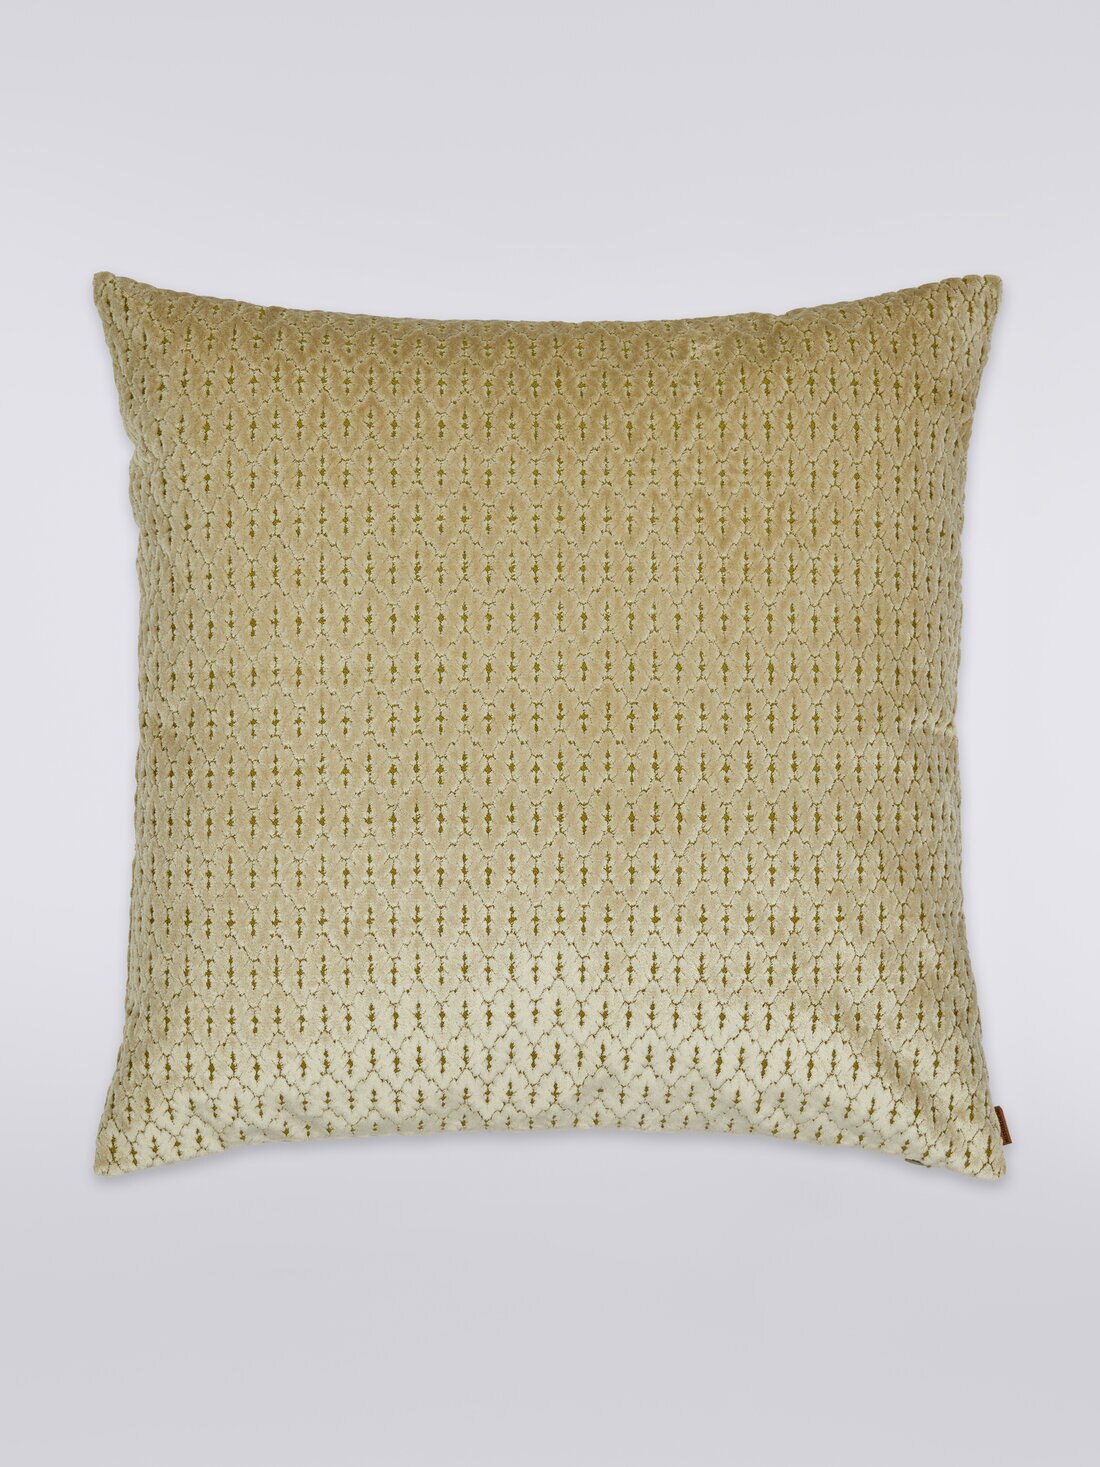 Bergerac cushion 60x60 cm, Multicoloured  - 8051275607403 - 0